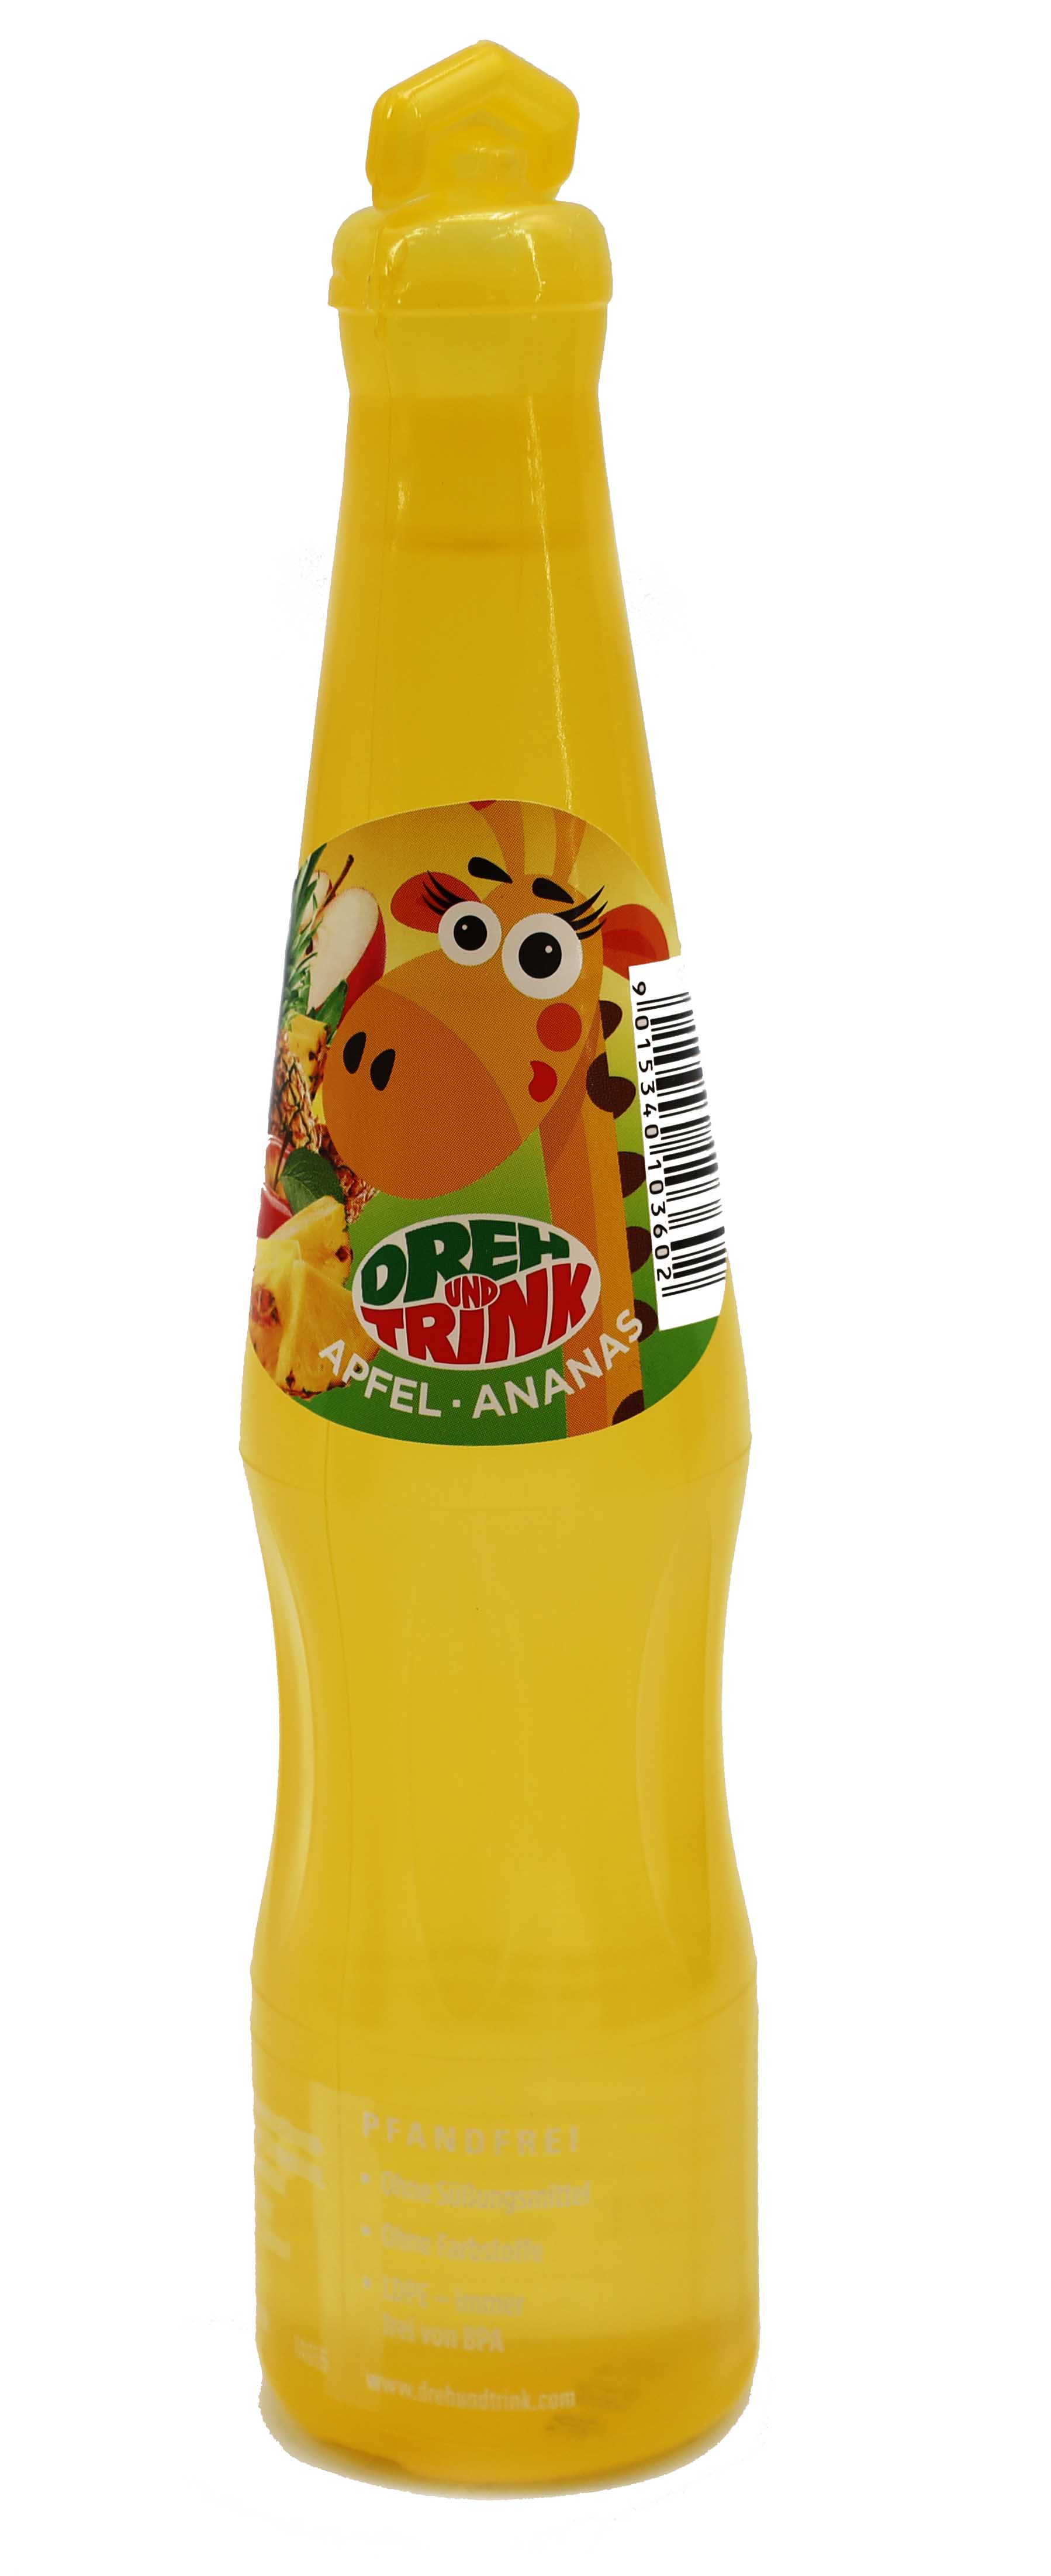 Dreh & Trink Apfel-Ananas 0,2 lt.